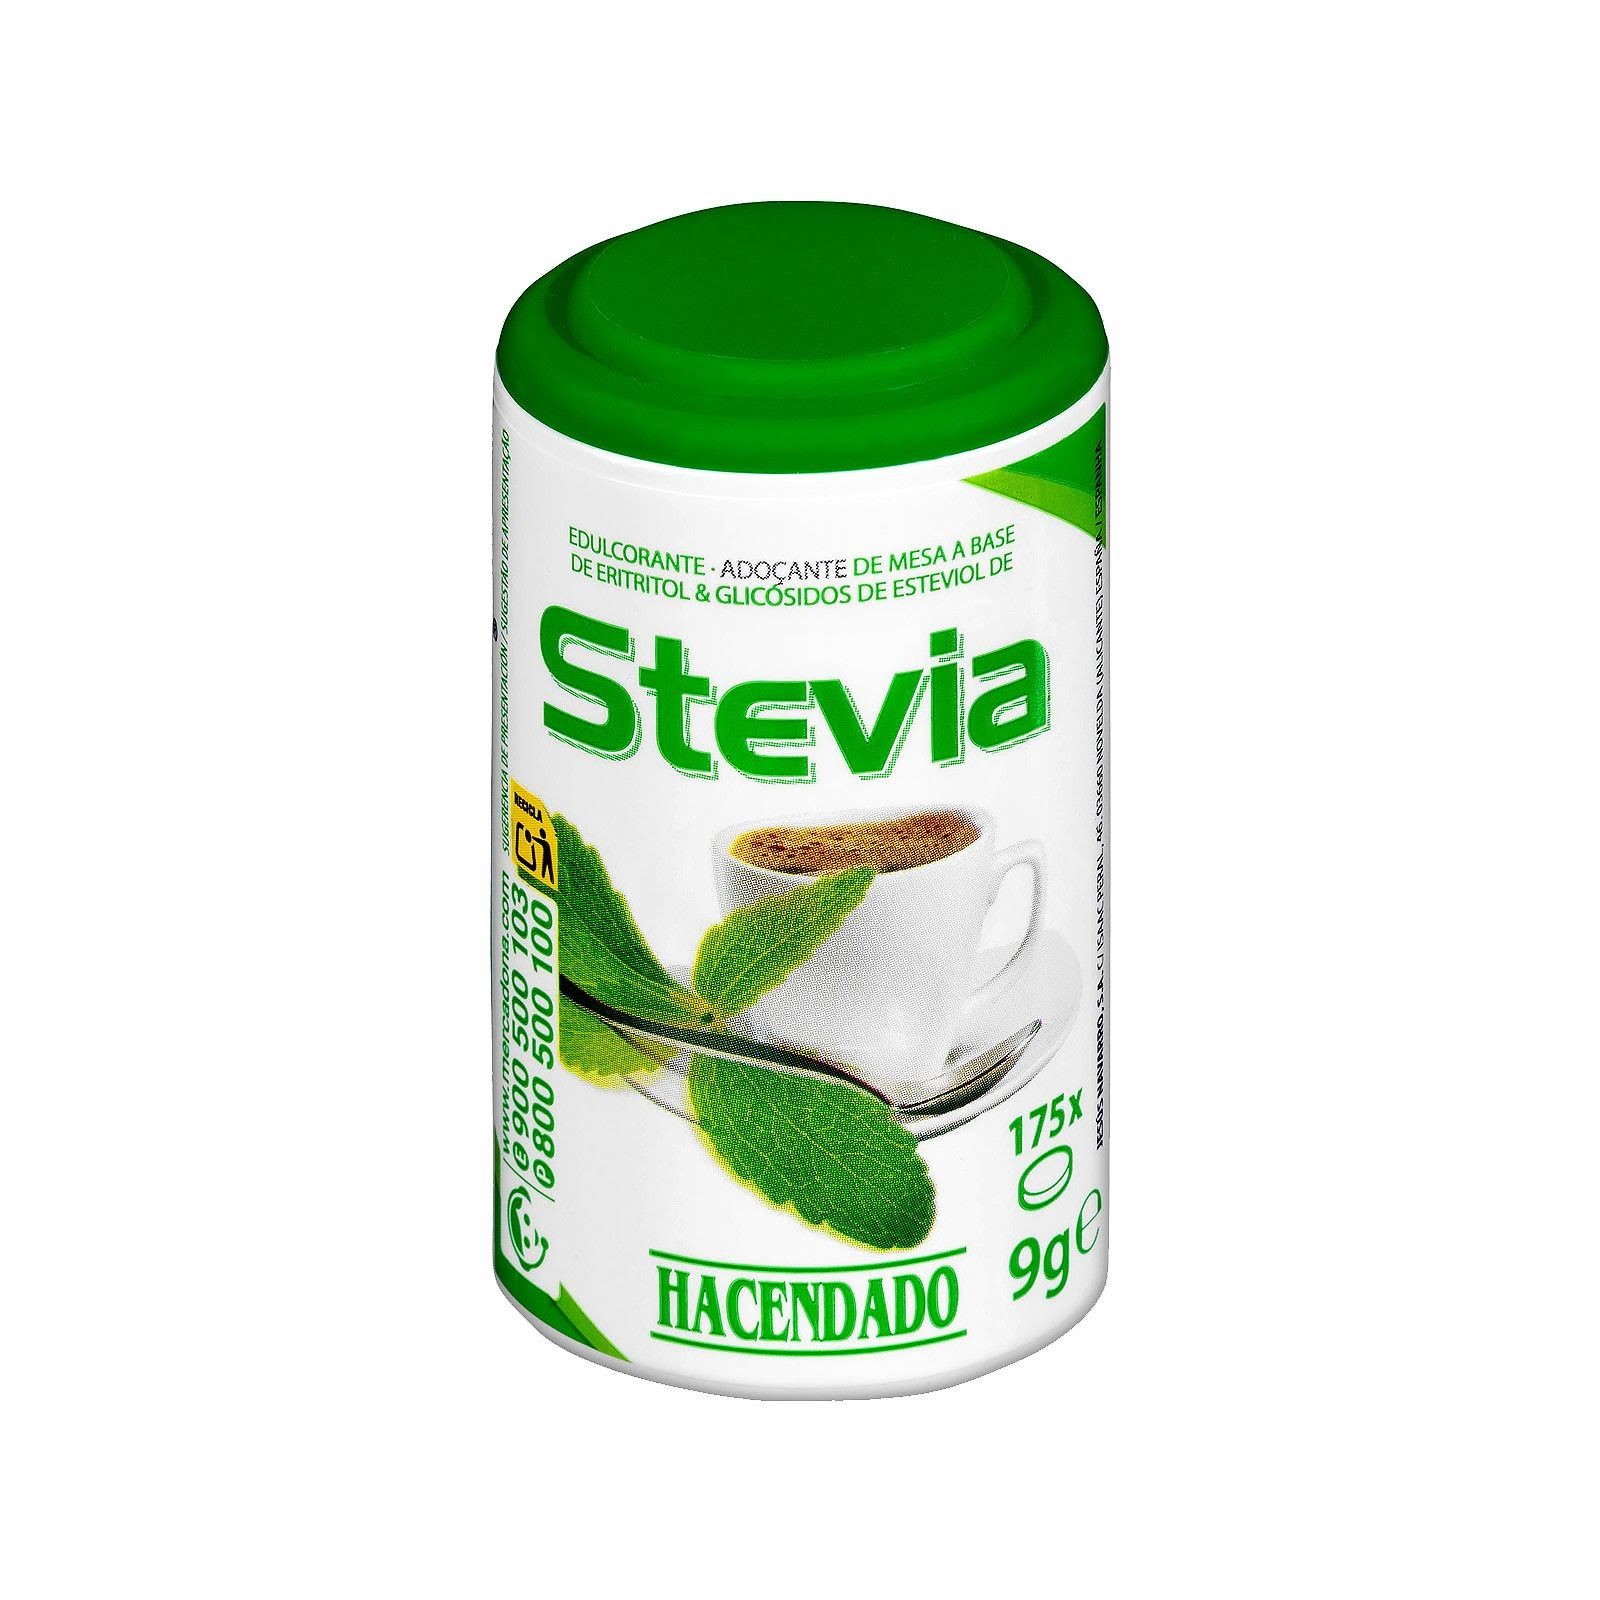 edulcorante-de-stevia-en-pastillas-hacendado-mercadona-1-9893220